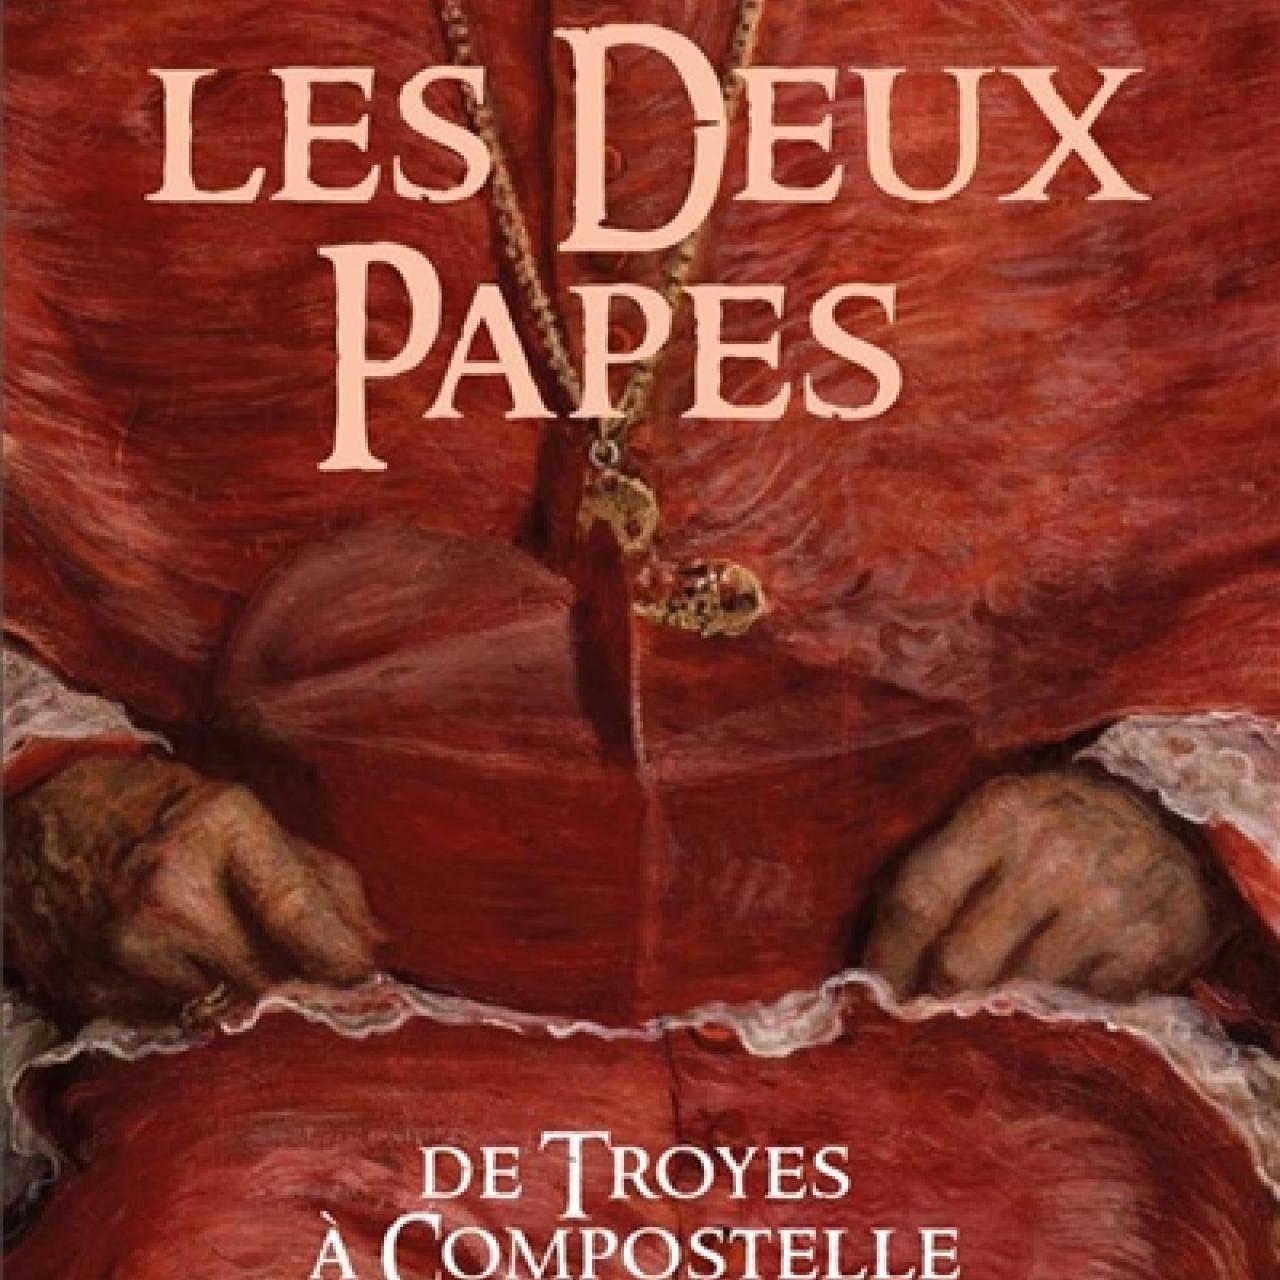 La Saga des Limousins, volume 23 : Les deux papes